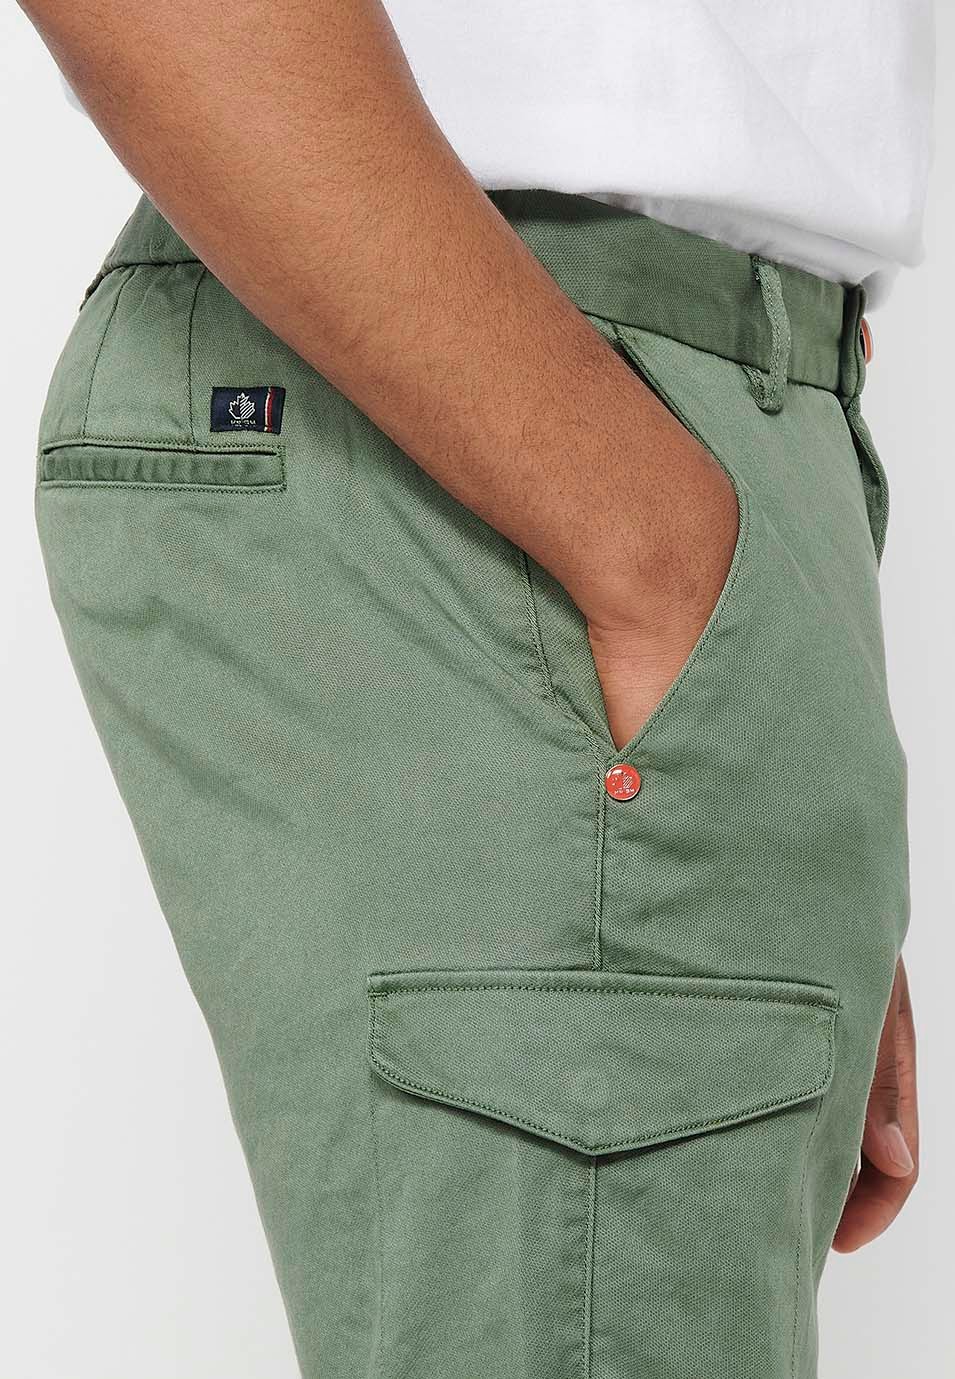 Pantalons curts amb Cintura engomada i tancament amb cremallera i botó amb Butxaques, dos laterals amb solapa de Color Verd per a Home 8